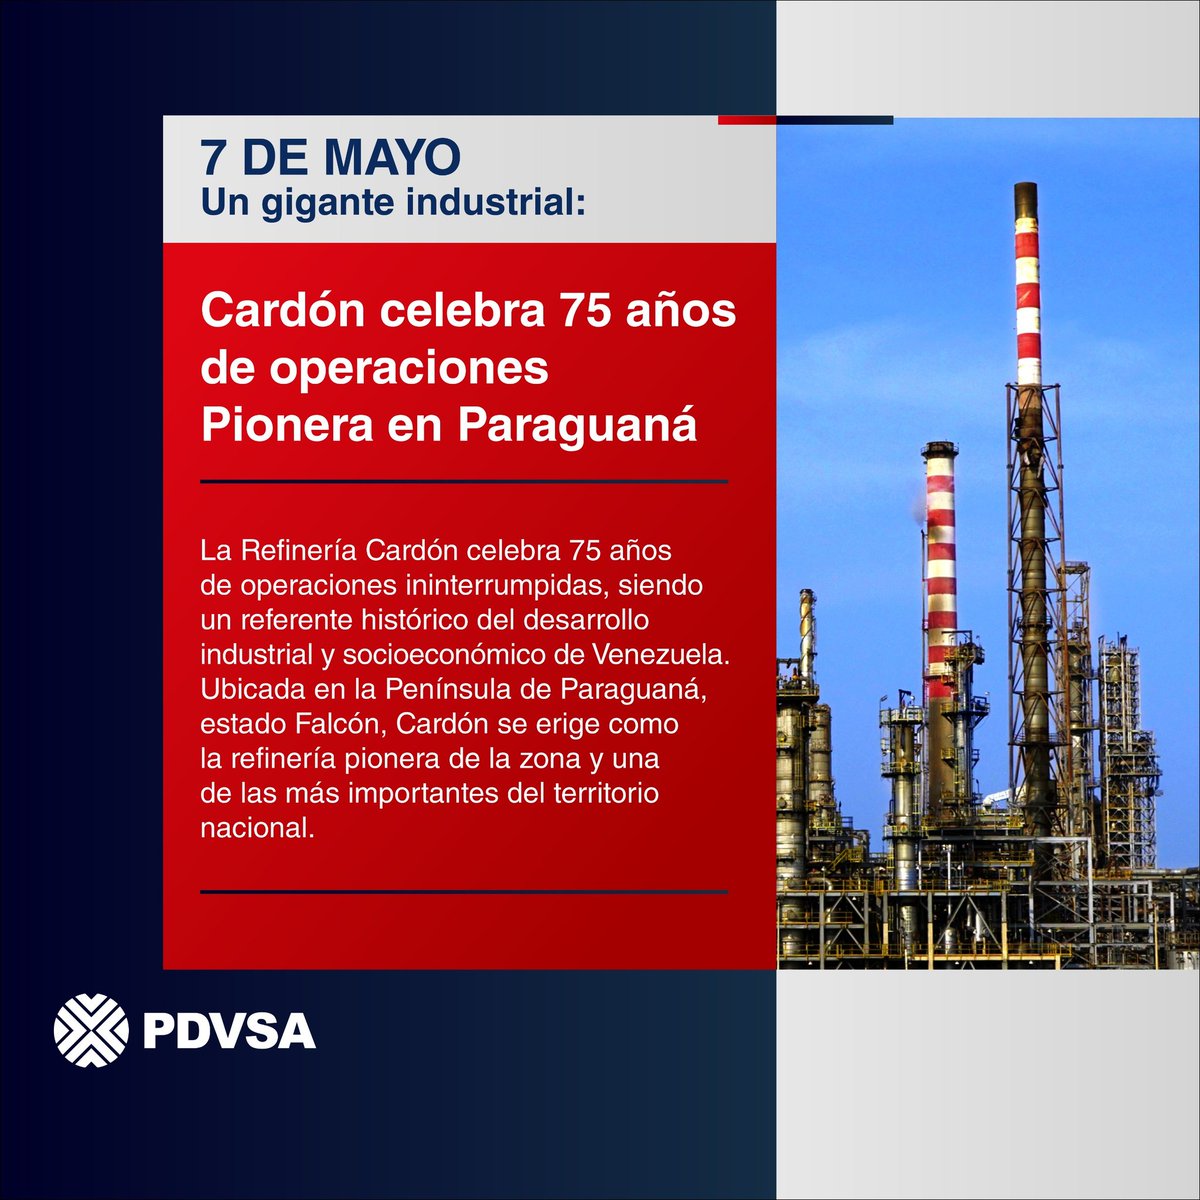 La Refinería Cardón celebra 75 años de operaciones ininterrumpidas, siendo un referente histórico del desarrollo industrial y socioeconómico de Venezuela. Ubicada en la Península de Paraguaná, estado Falcón, se erige como la refinería pionera de la zona. ¡Felicidades!